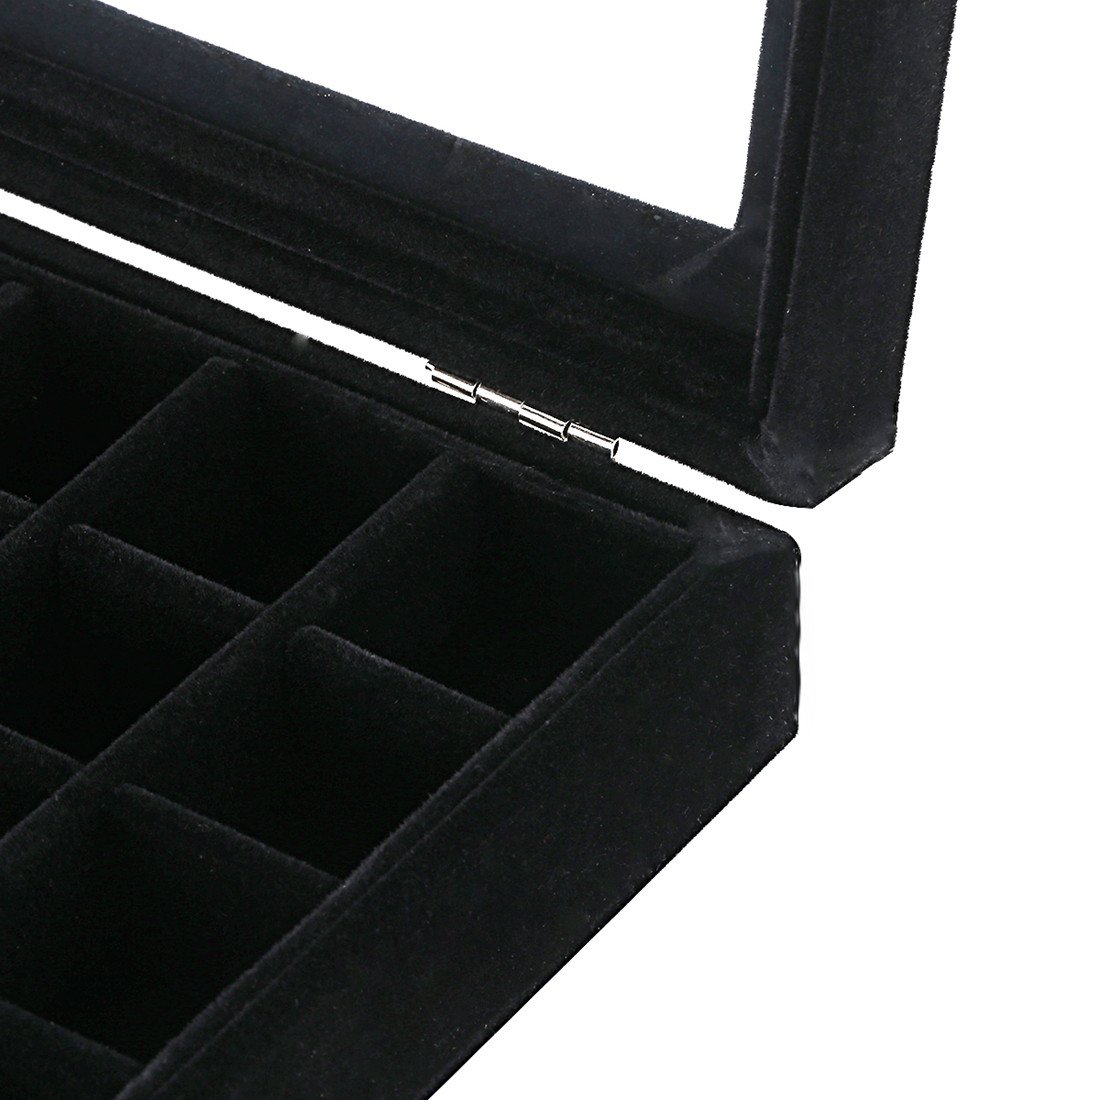 Ivosmart 24 Section Velvet Glass Jewelry Ring Display Organiser Box Tray Holder Earrings Storage Case (Black)